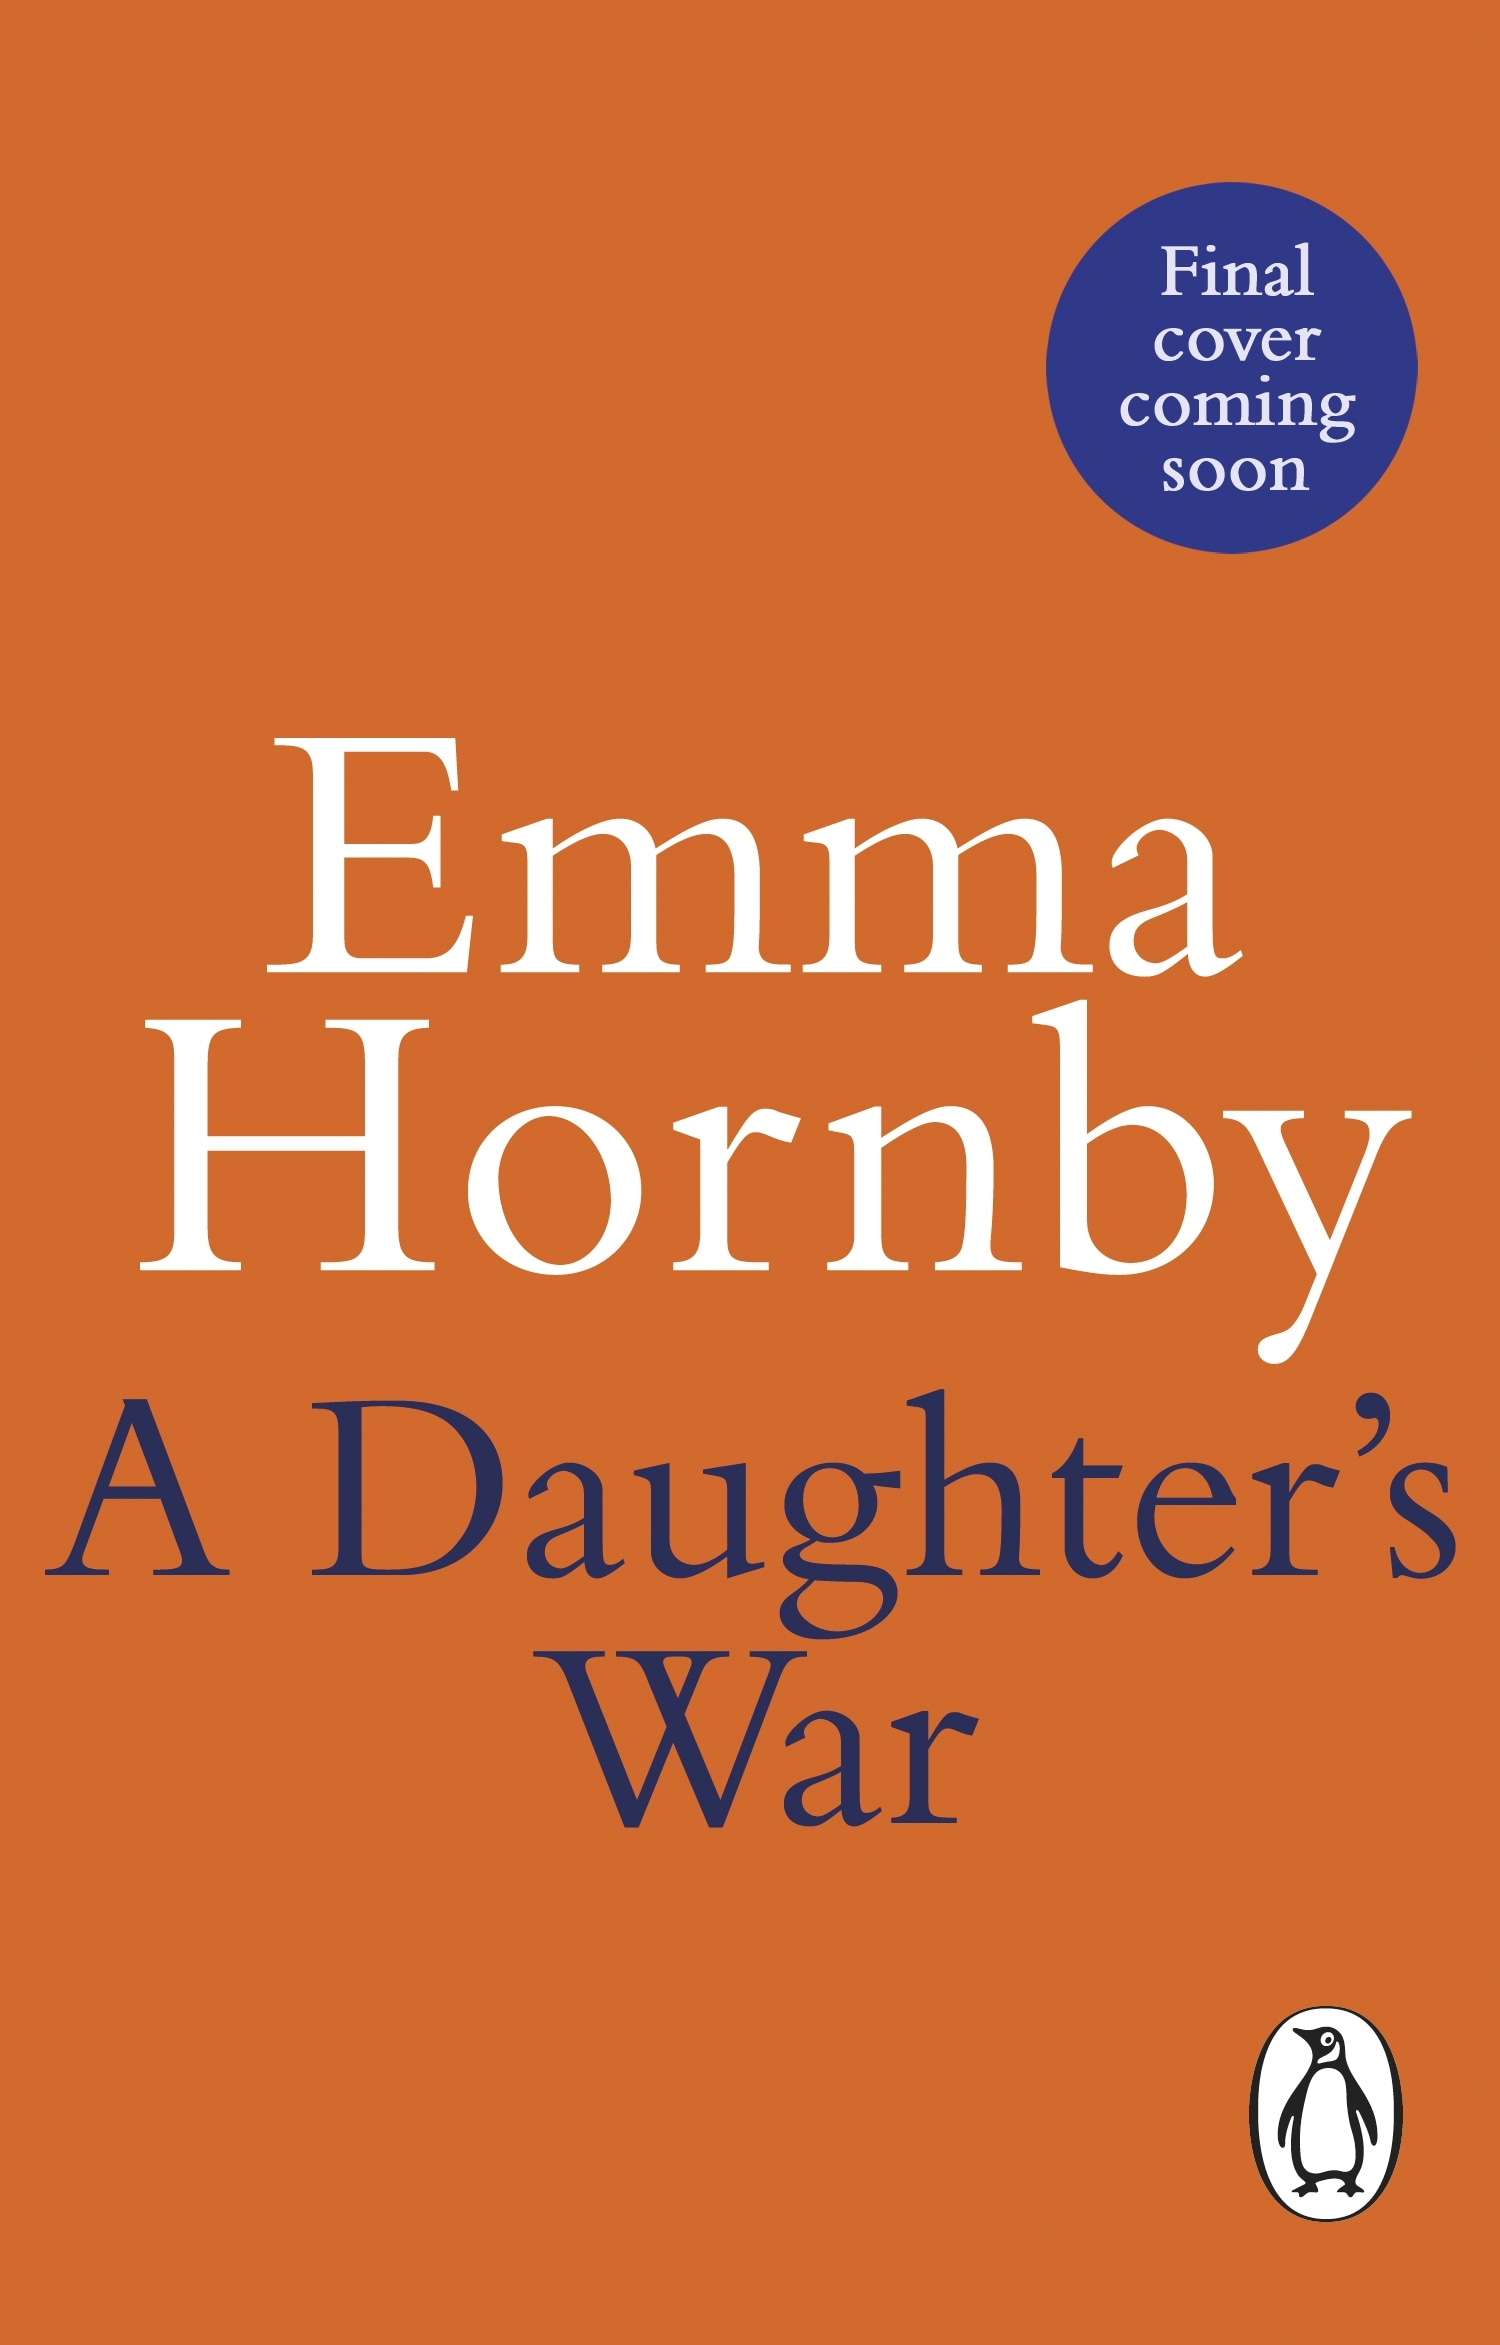 Book “A Daughter’s War” by Emma Hornby — September 15, 2022